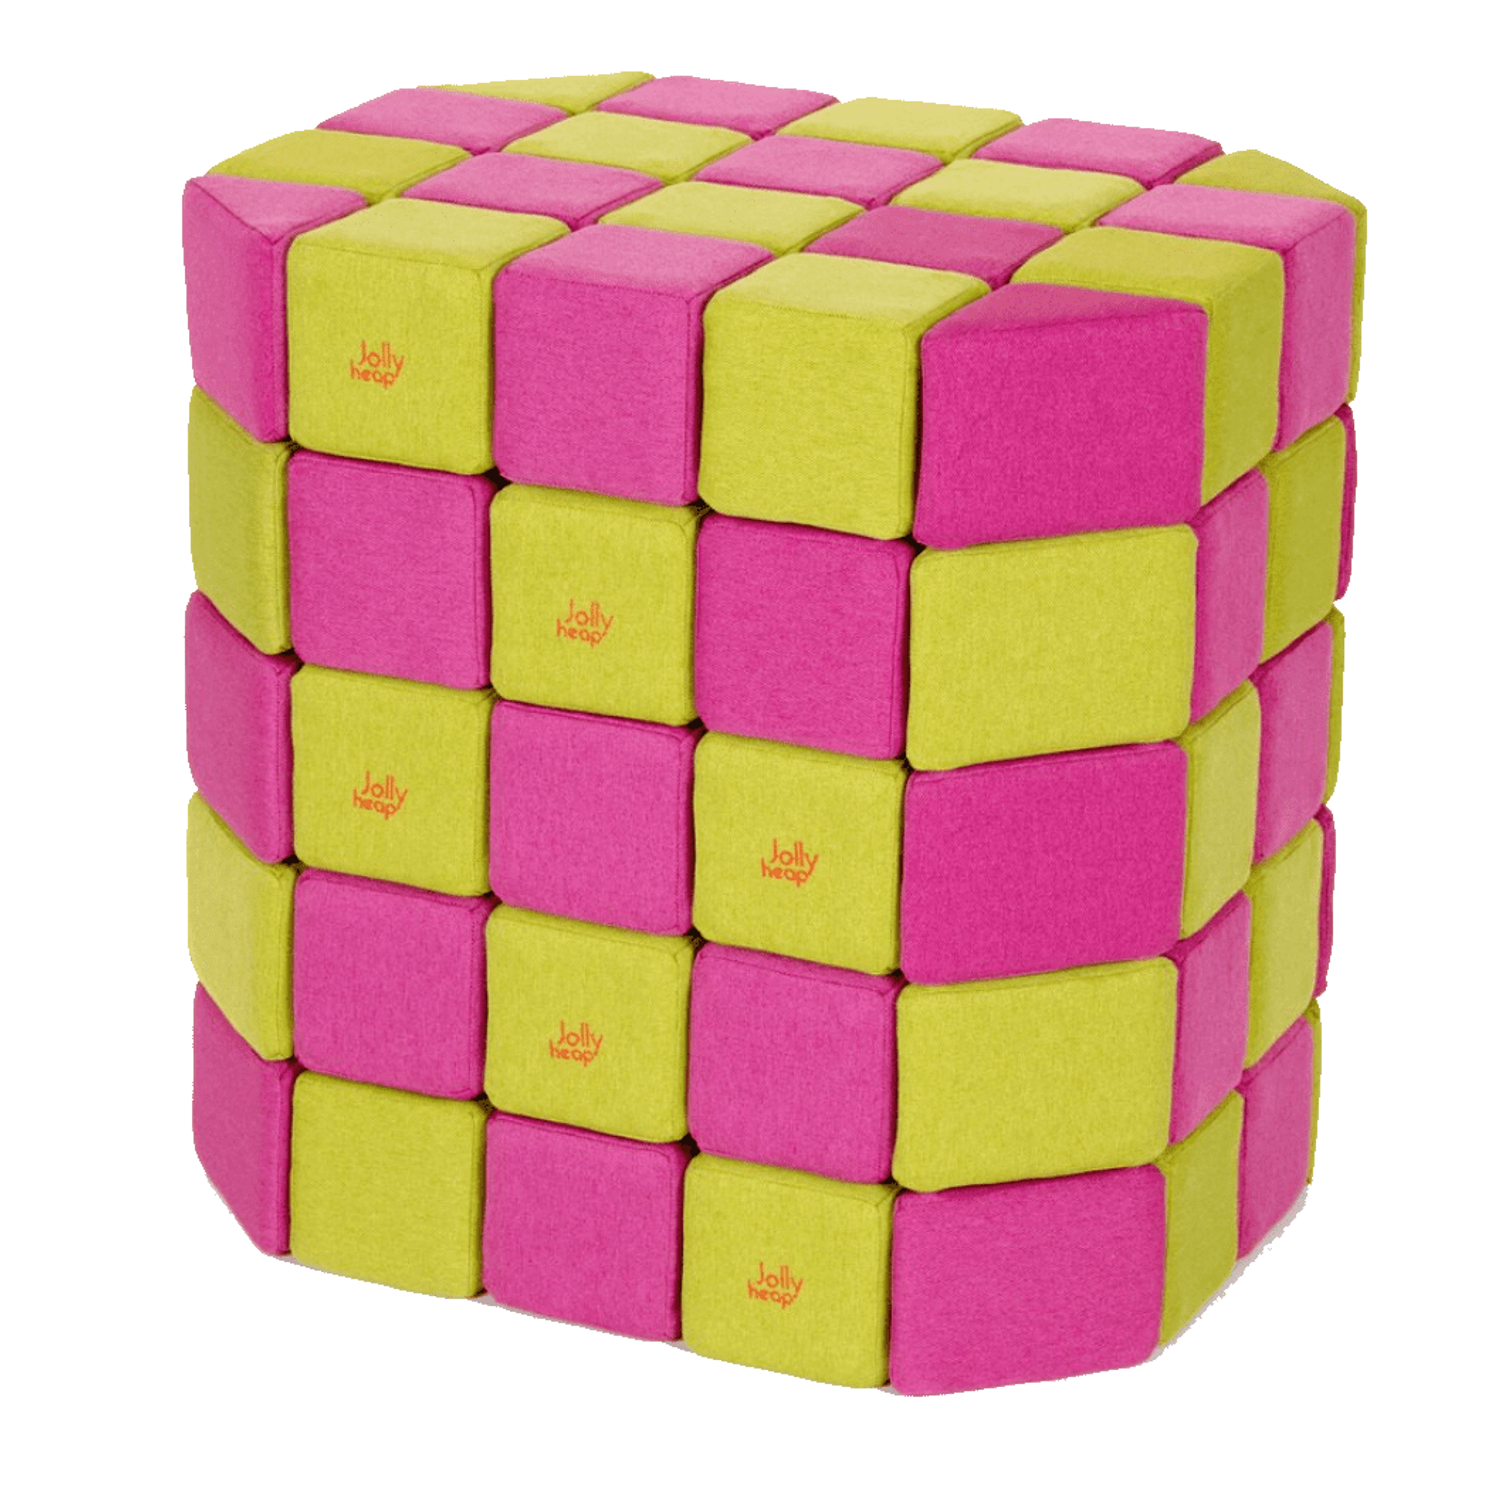 Магнитный конструктор JollyHeap Мягкие кубики Розовый-Желтый Basic 1121 100 штук - фото 1